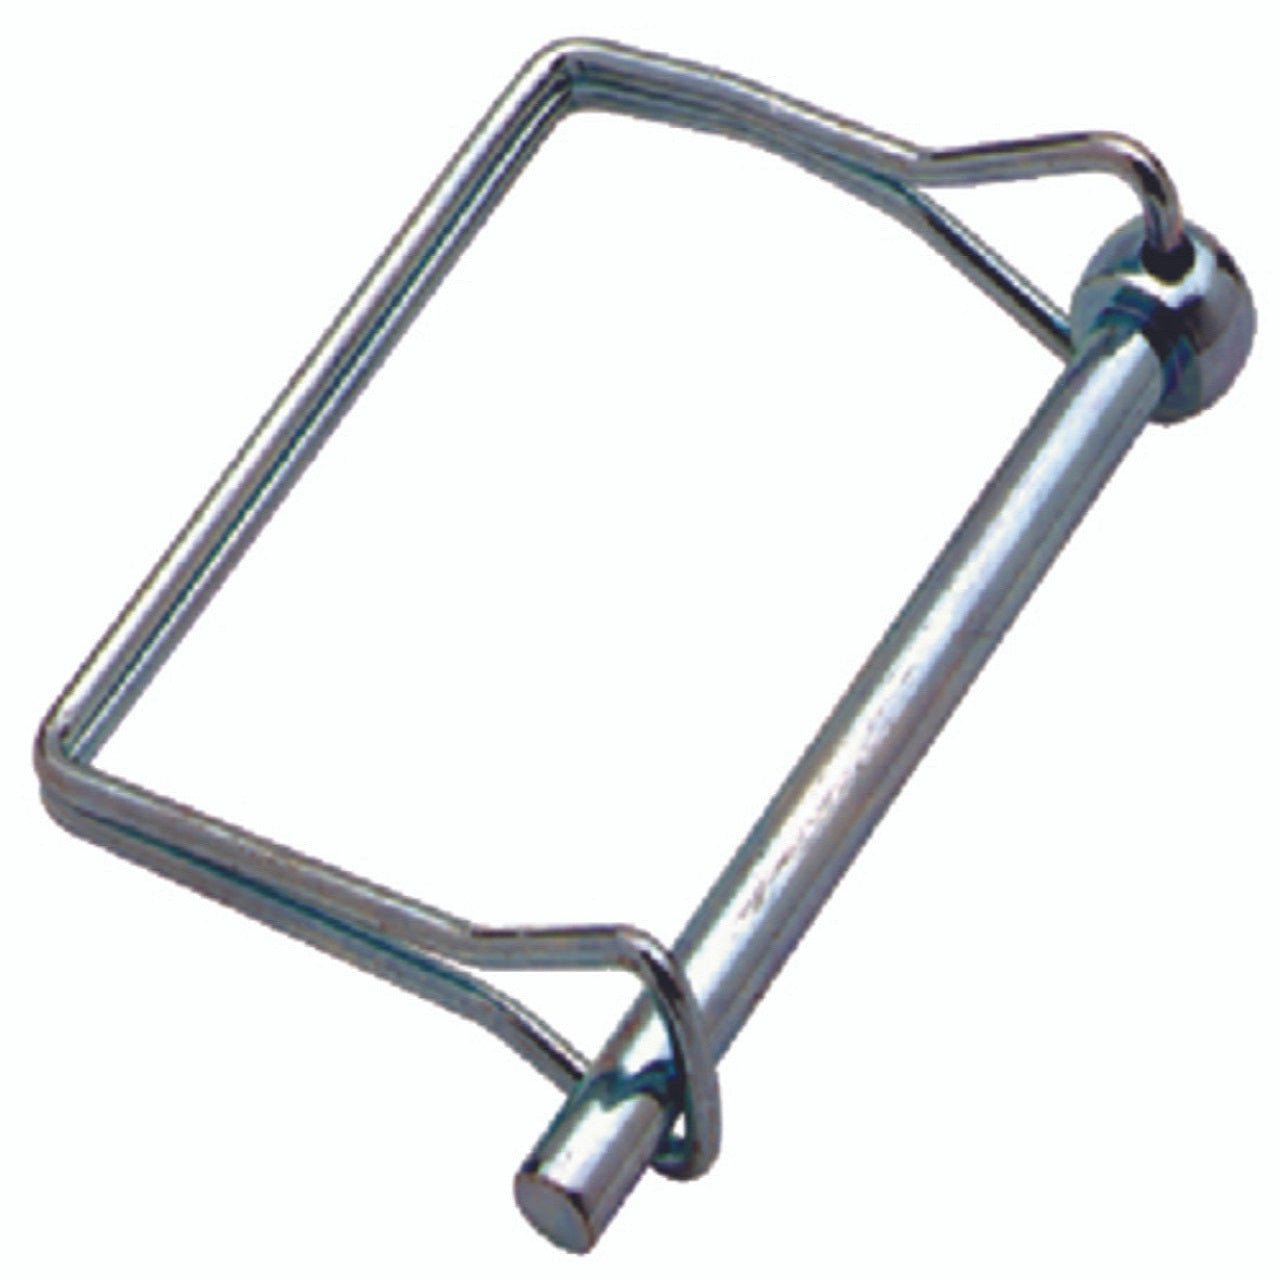 Coupler Locking Pin